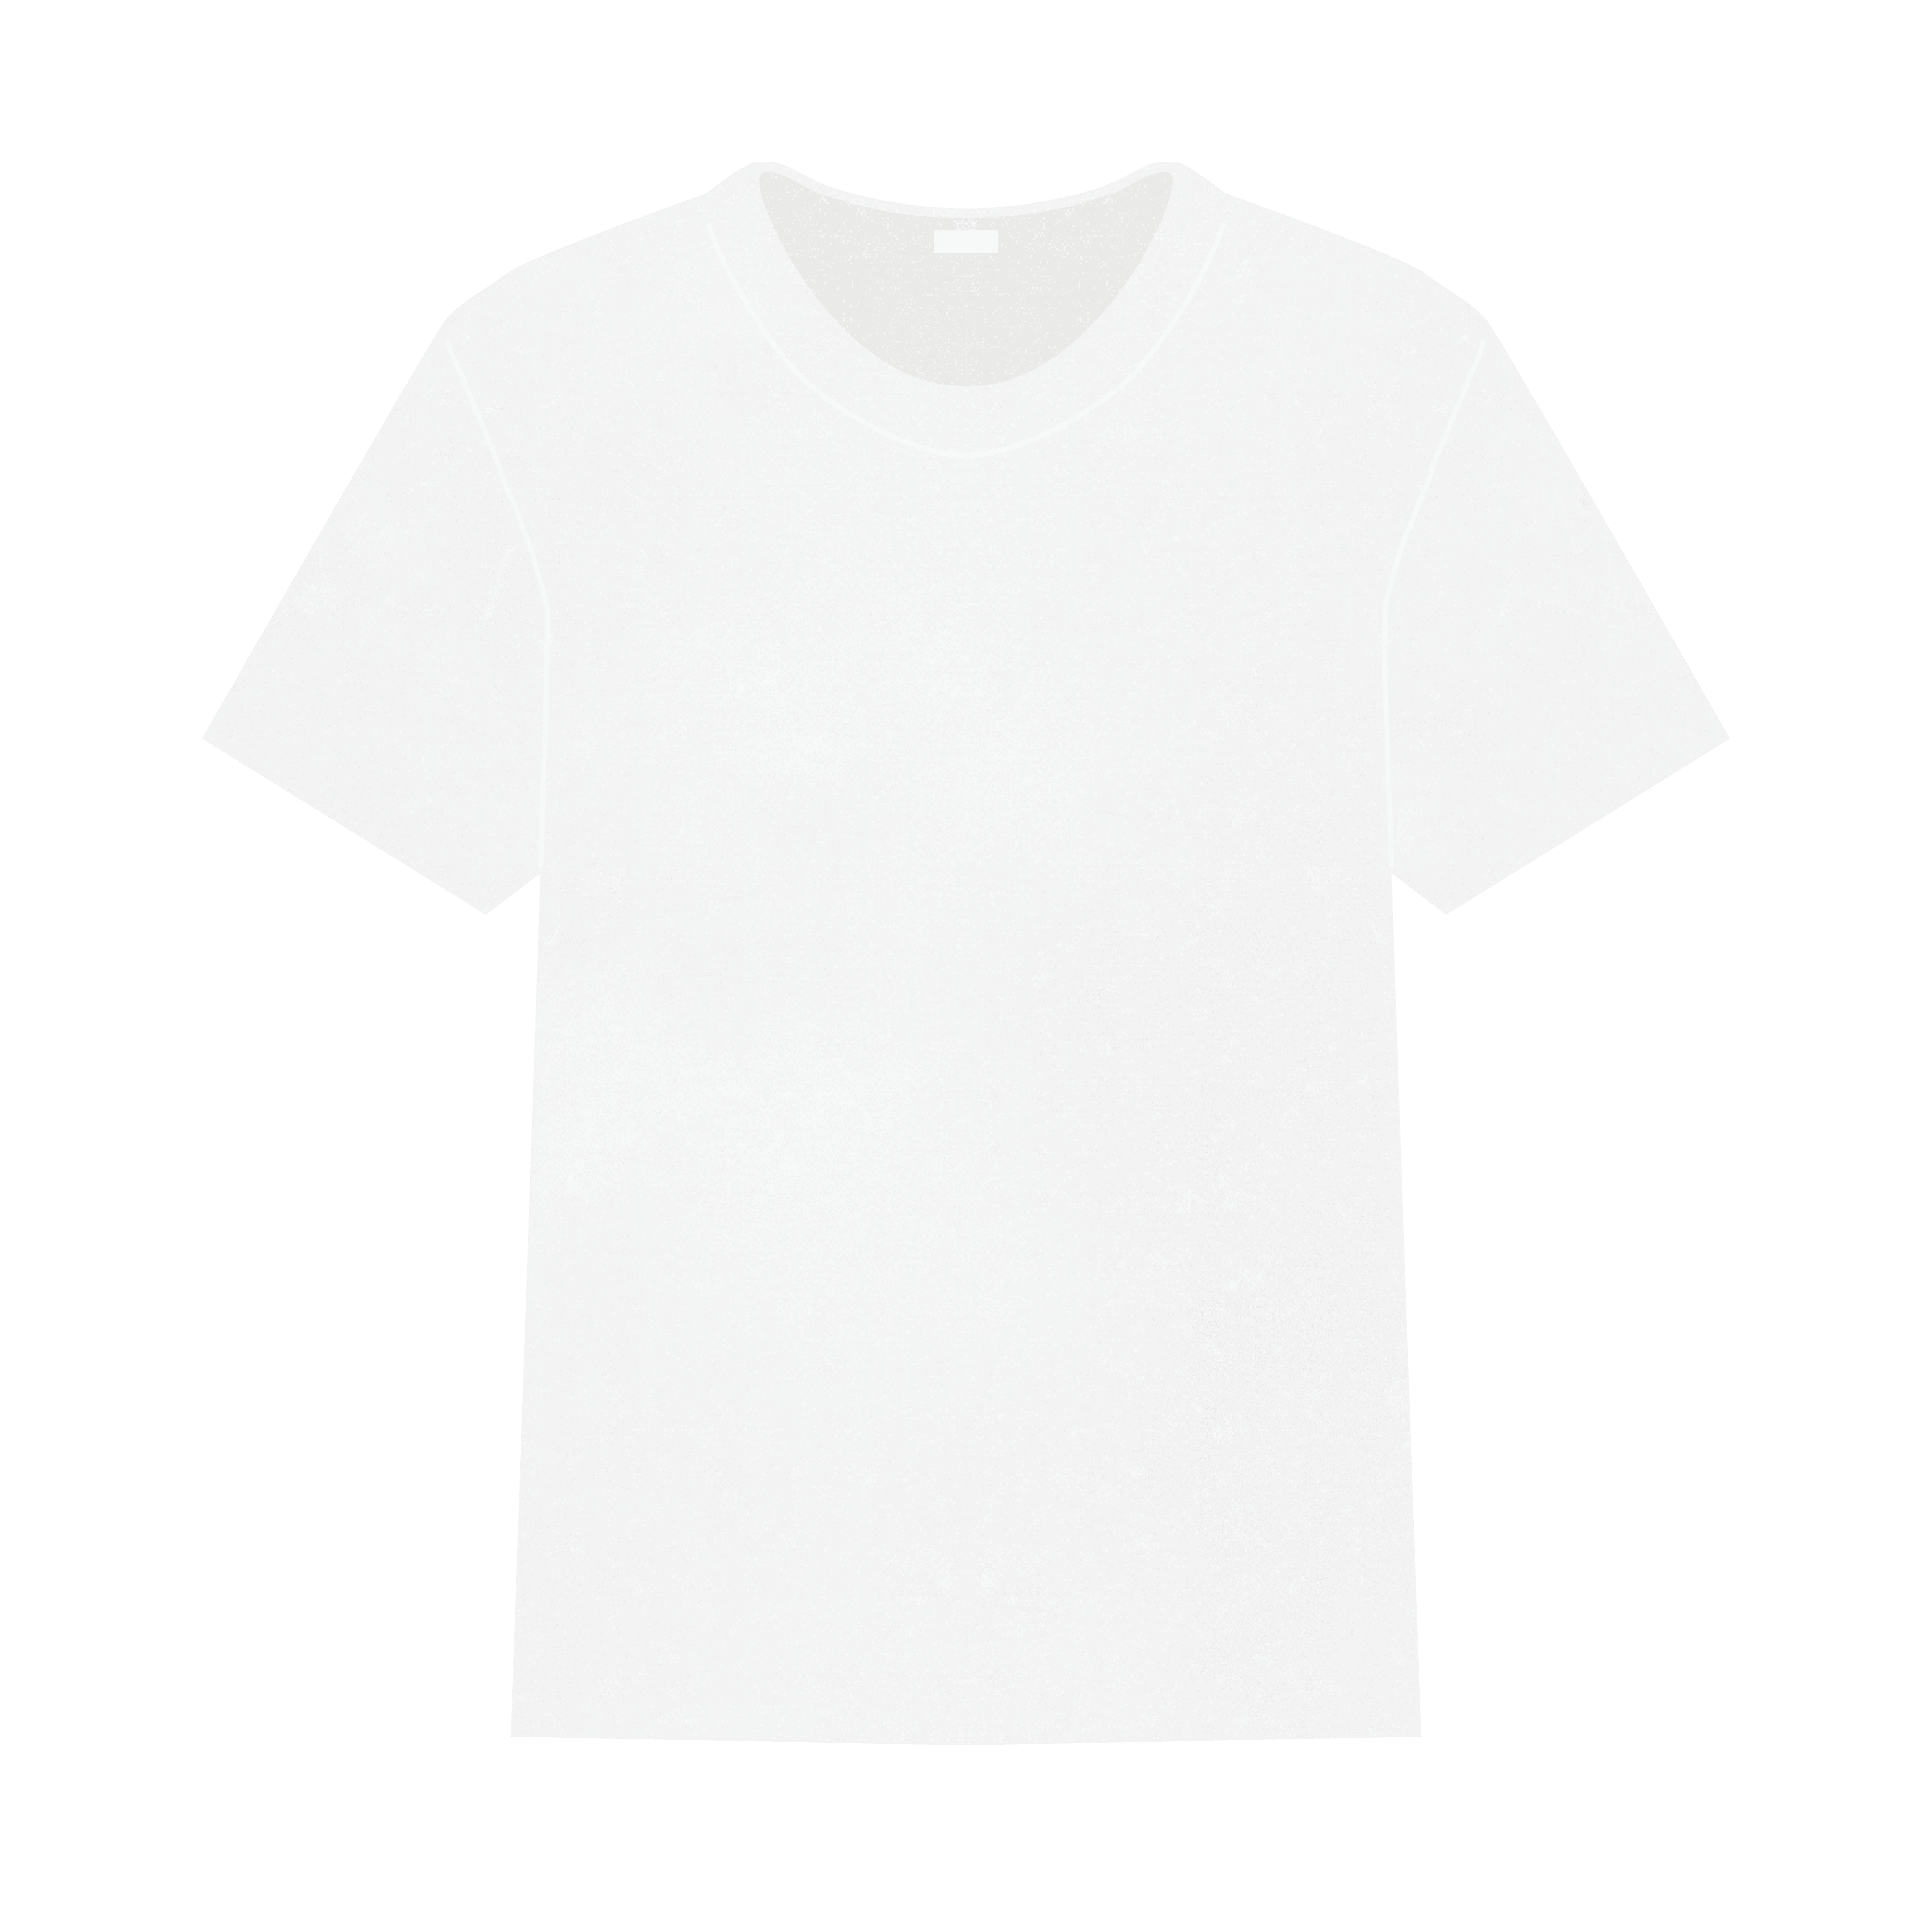 フリー素材 骨格診断 Tシャツのイラスト わかな イメコンのデザイナー Note